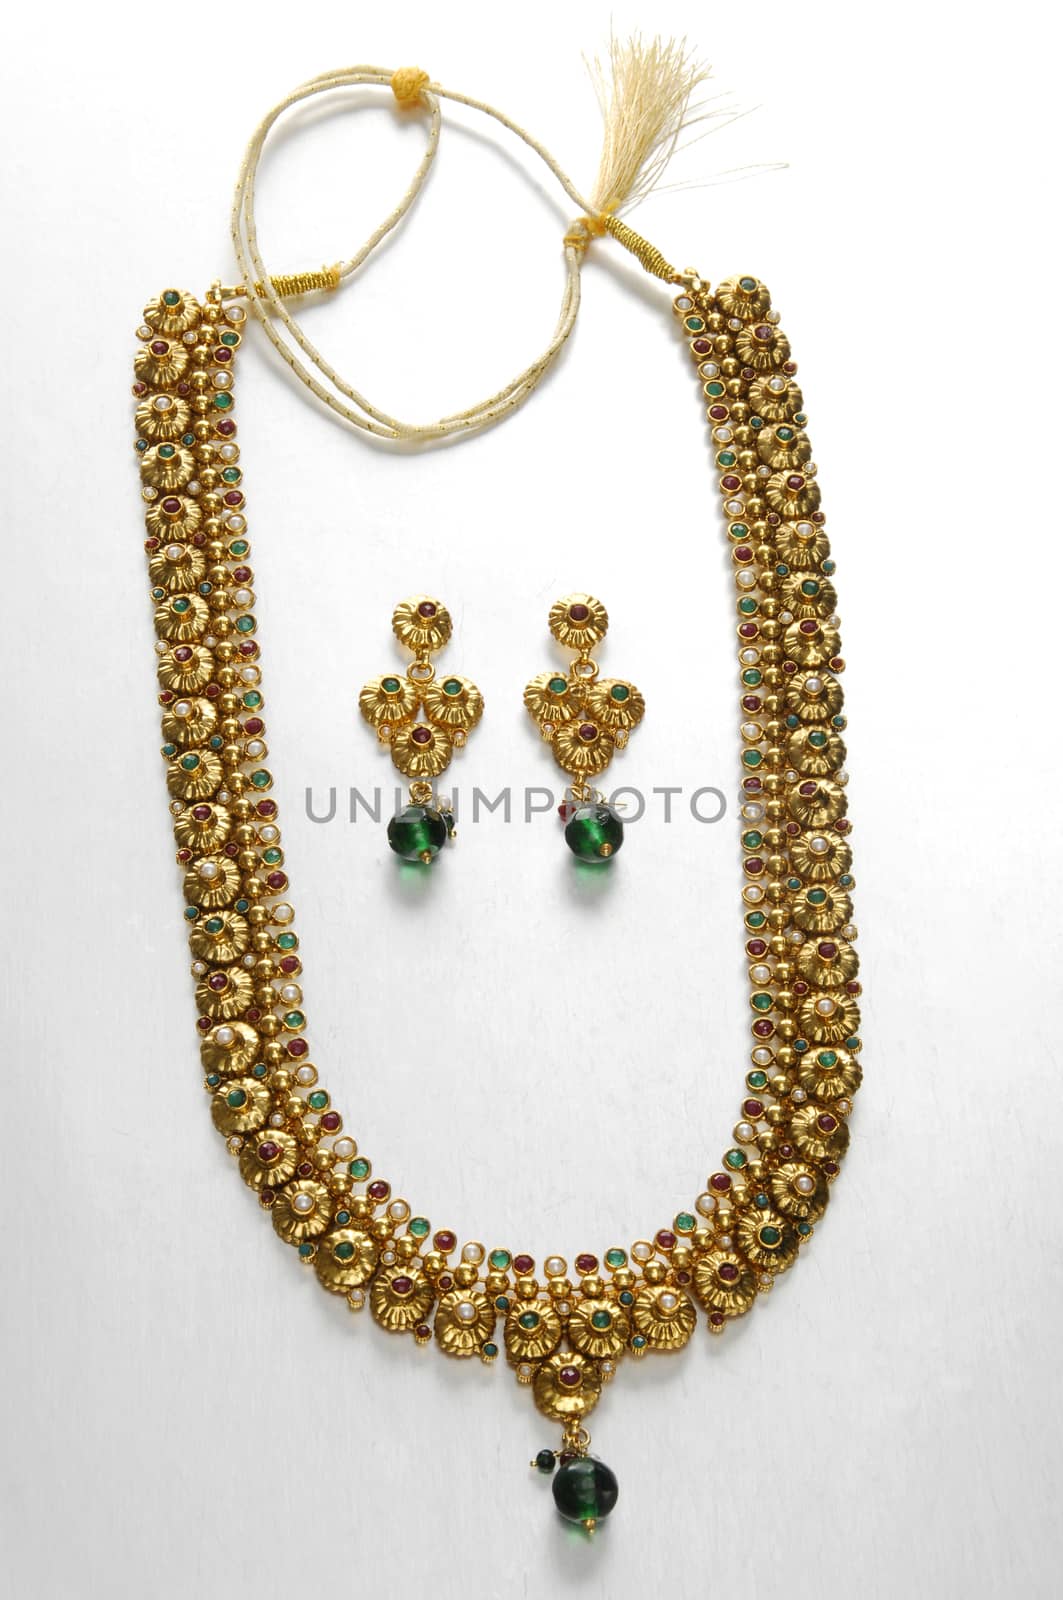 Gold jewelry Macro shot